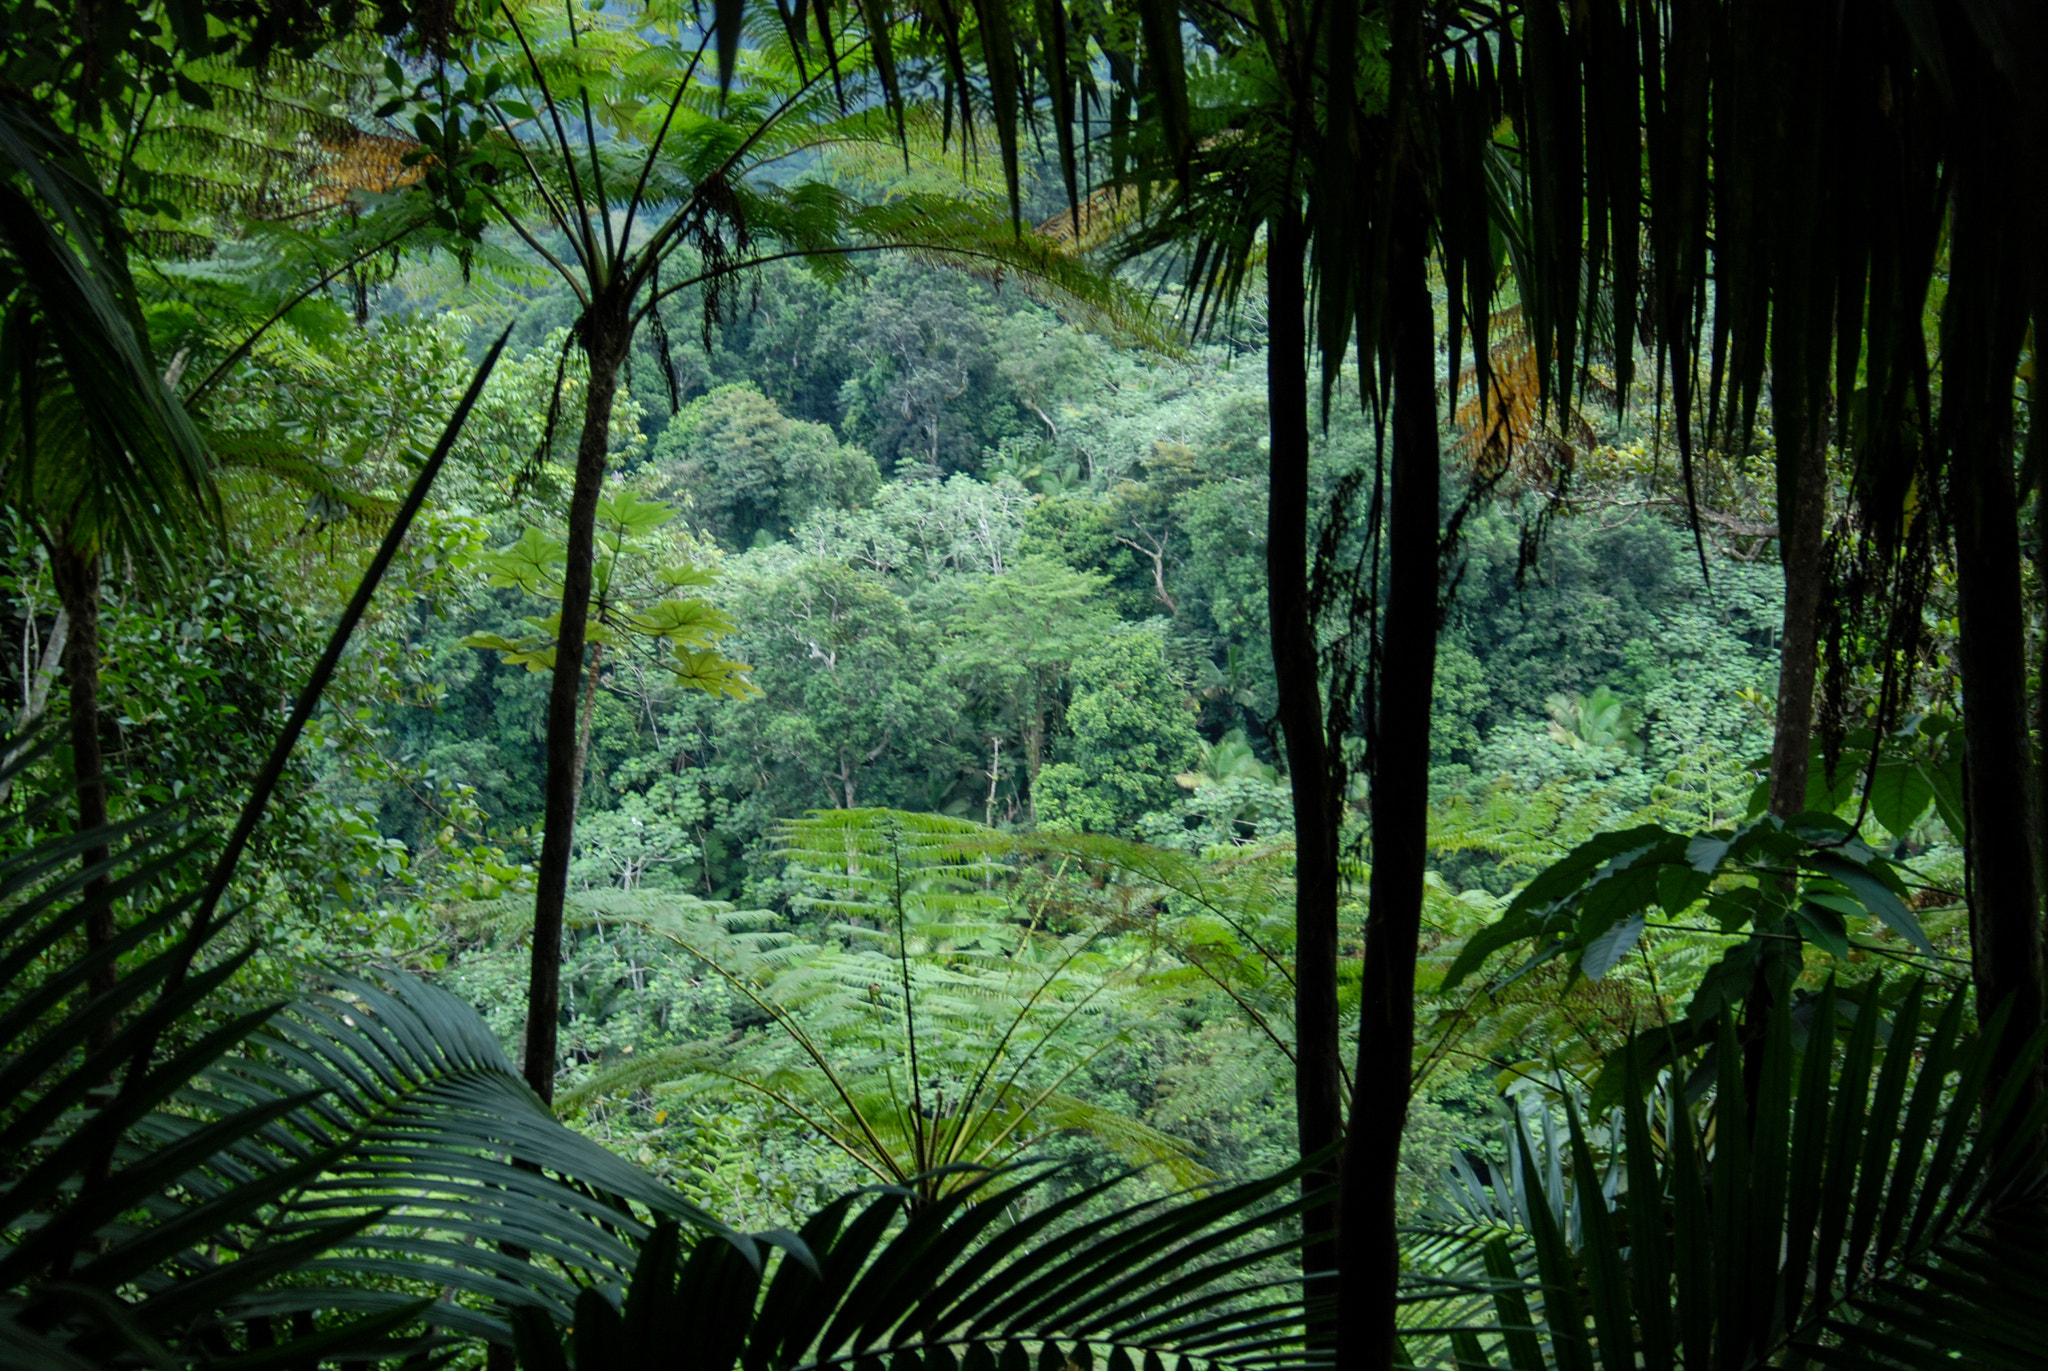 Nikon D80 + AF Zoom-Nikkor 28-80mm f/3.3-5.6G sample photo. In the rainforest photography